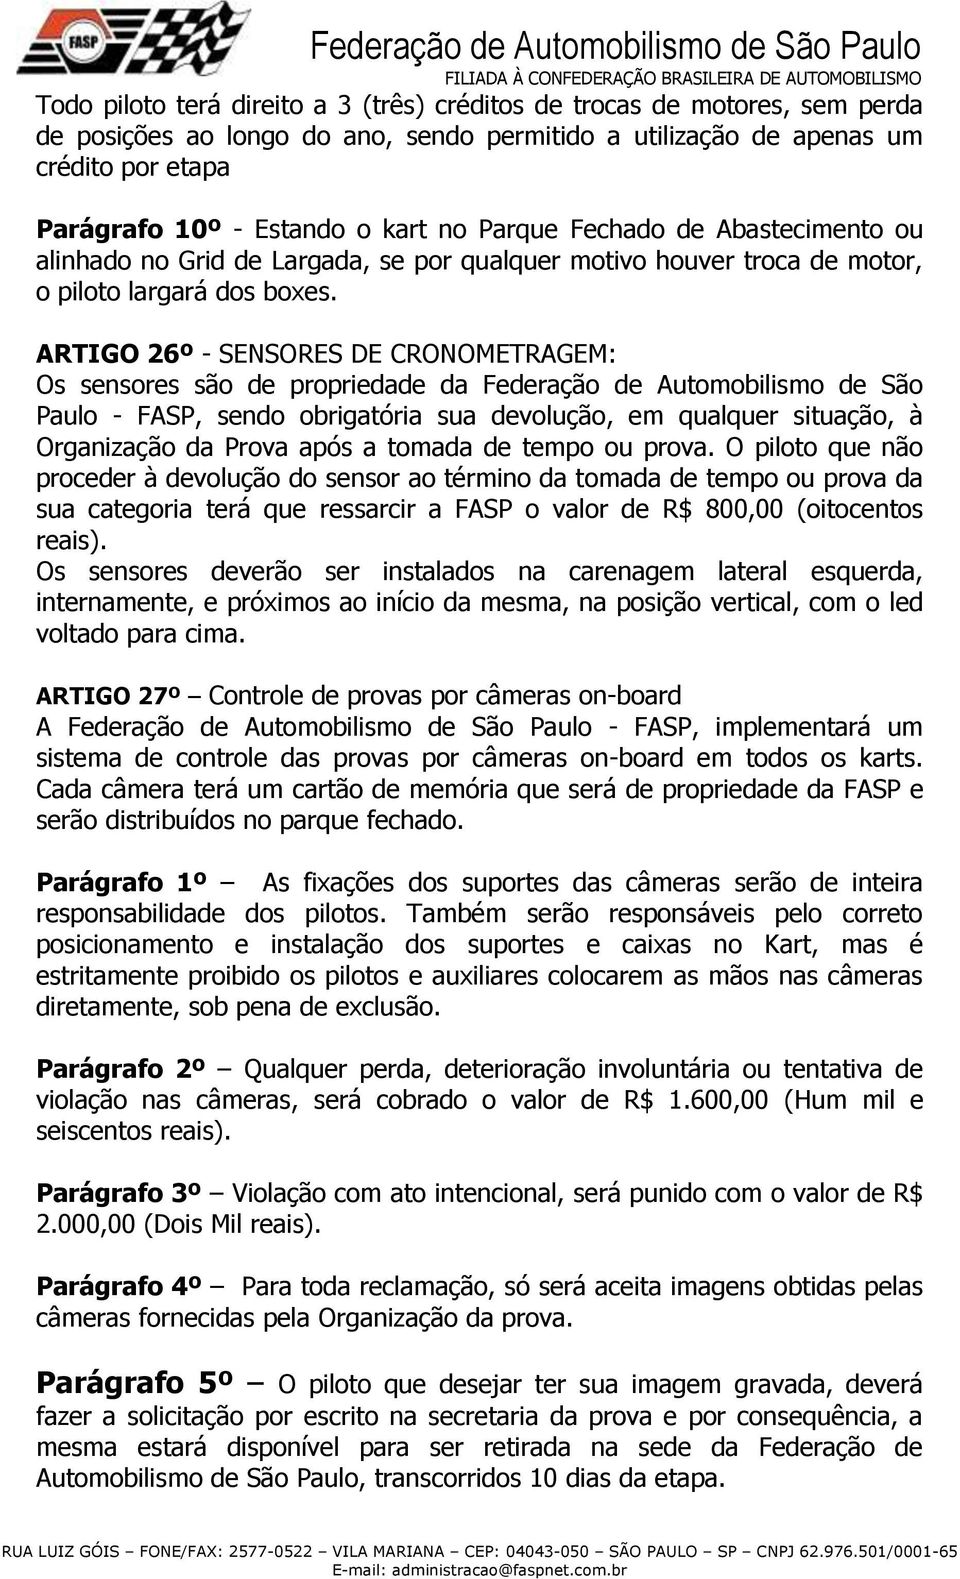 ARTIGO 26º - SENSORES DE CRONOMETRAGEM: Os sensores são de propriedade da Federação de Automobilismo de São Paulo - FASP, sendo obrigatória sua devolução, em qualquer situação, à Organização da Prova